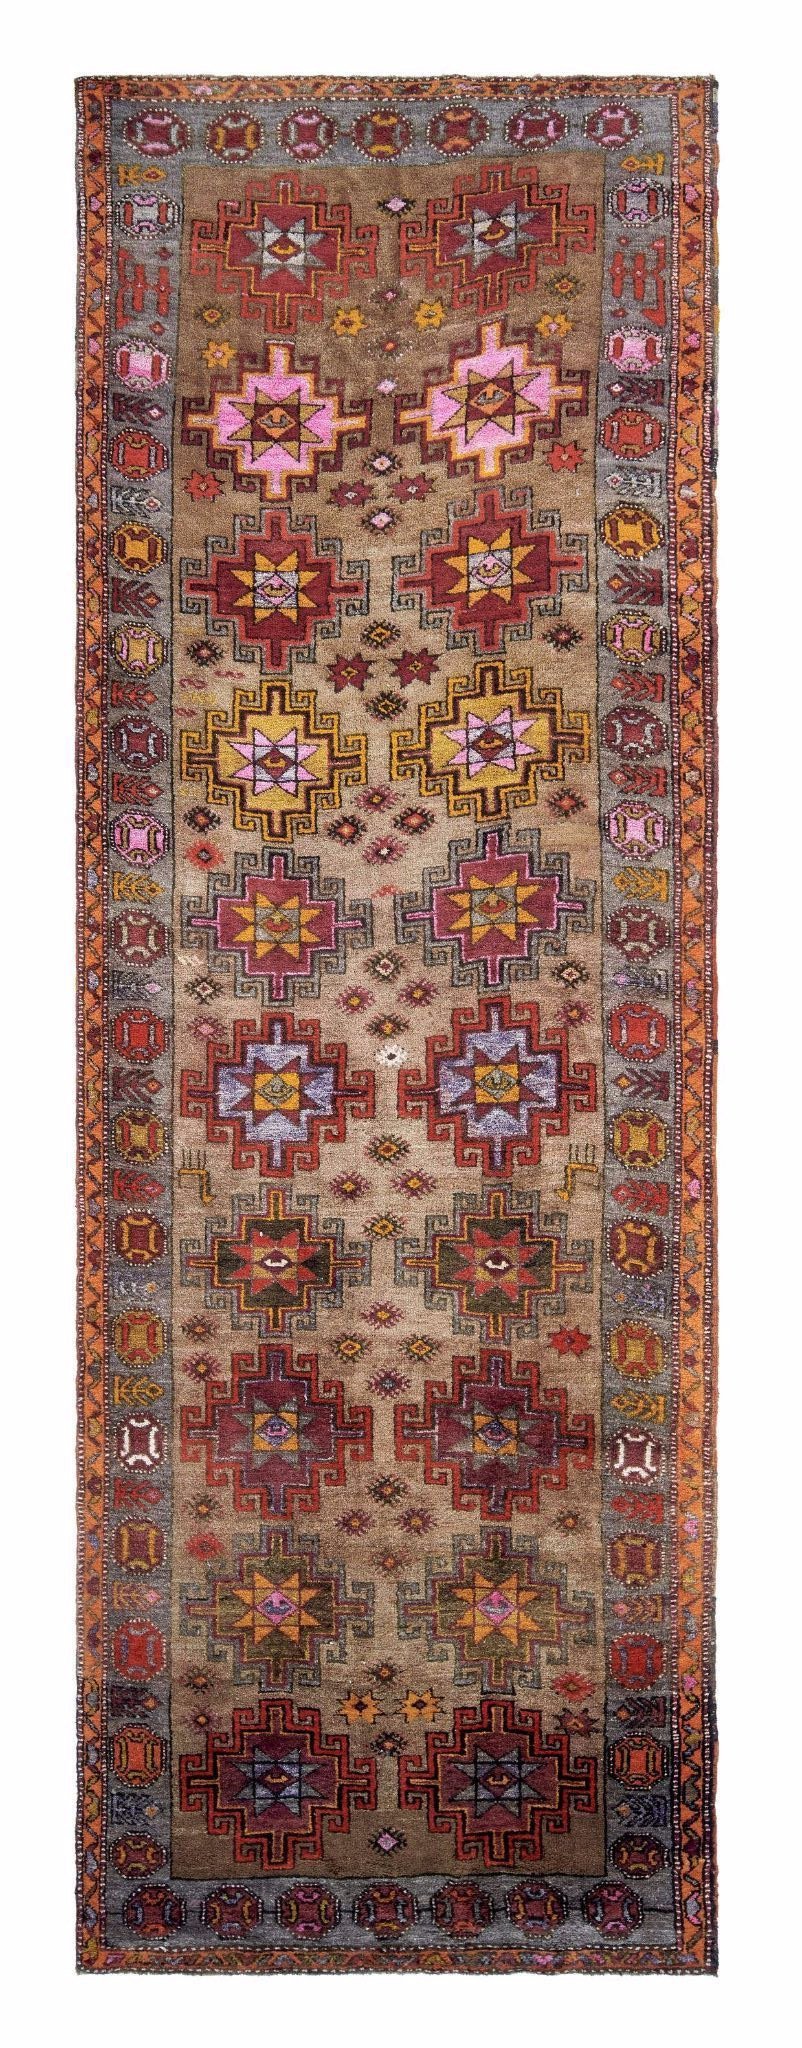 4x13 Colorful Old & Vintage Turkish Area Rug-turkish_rugs-oriental_rugs-kilim_rugs-oushak_rugs